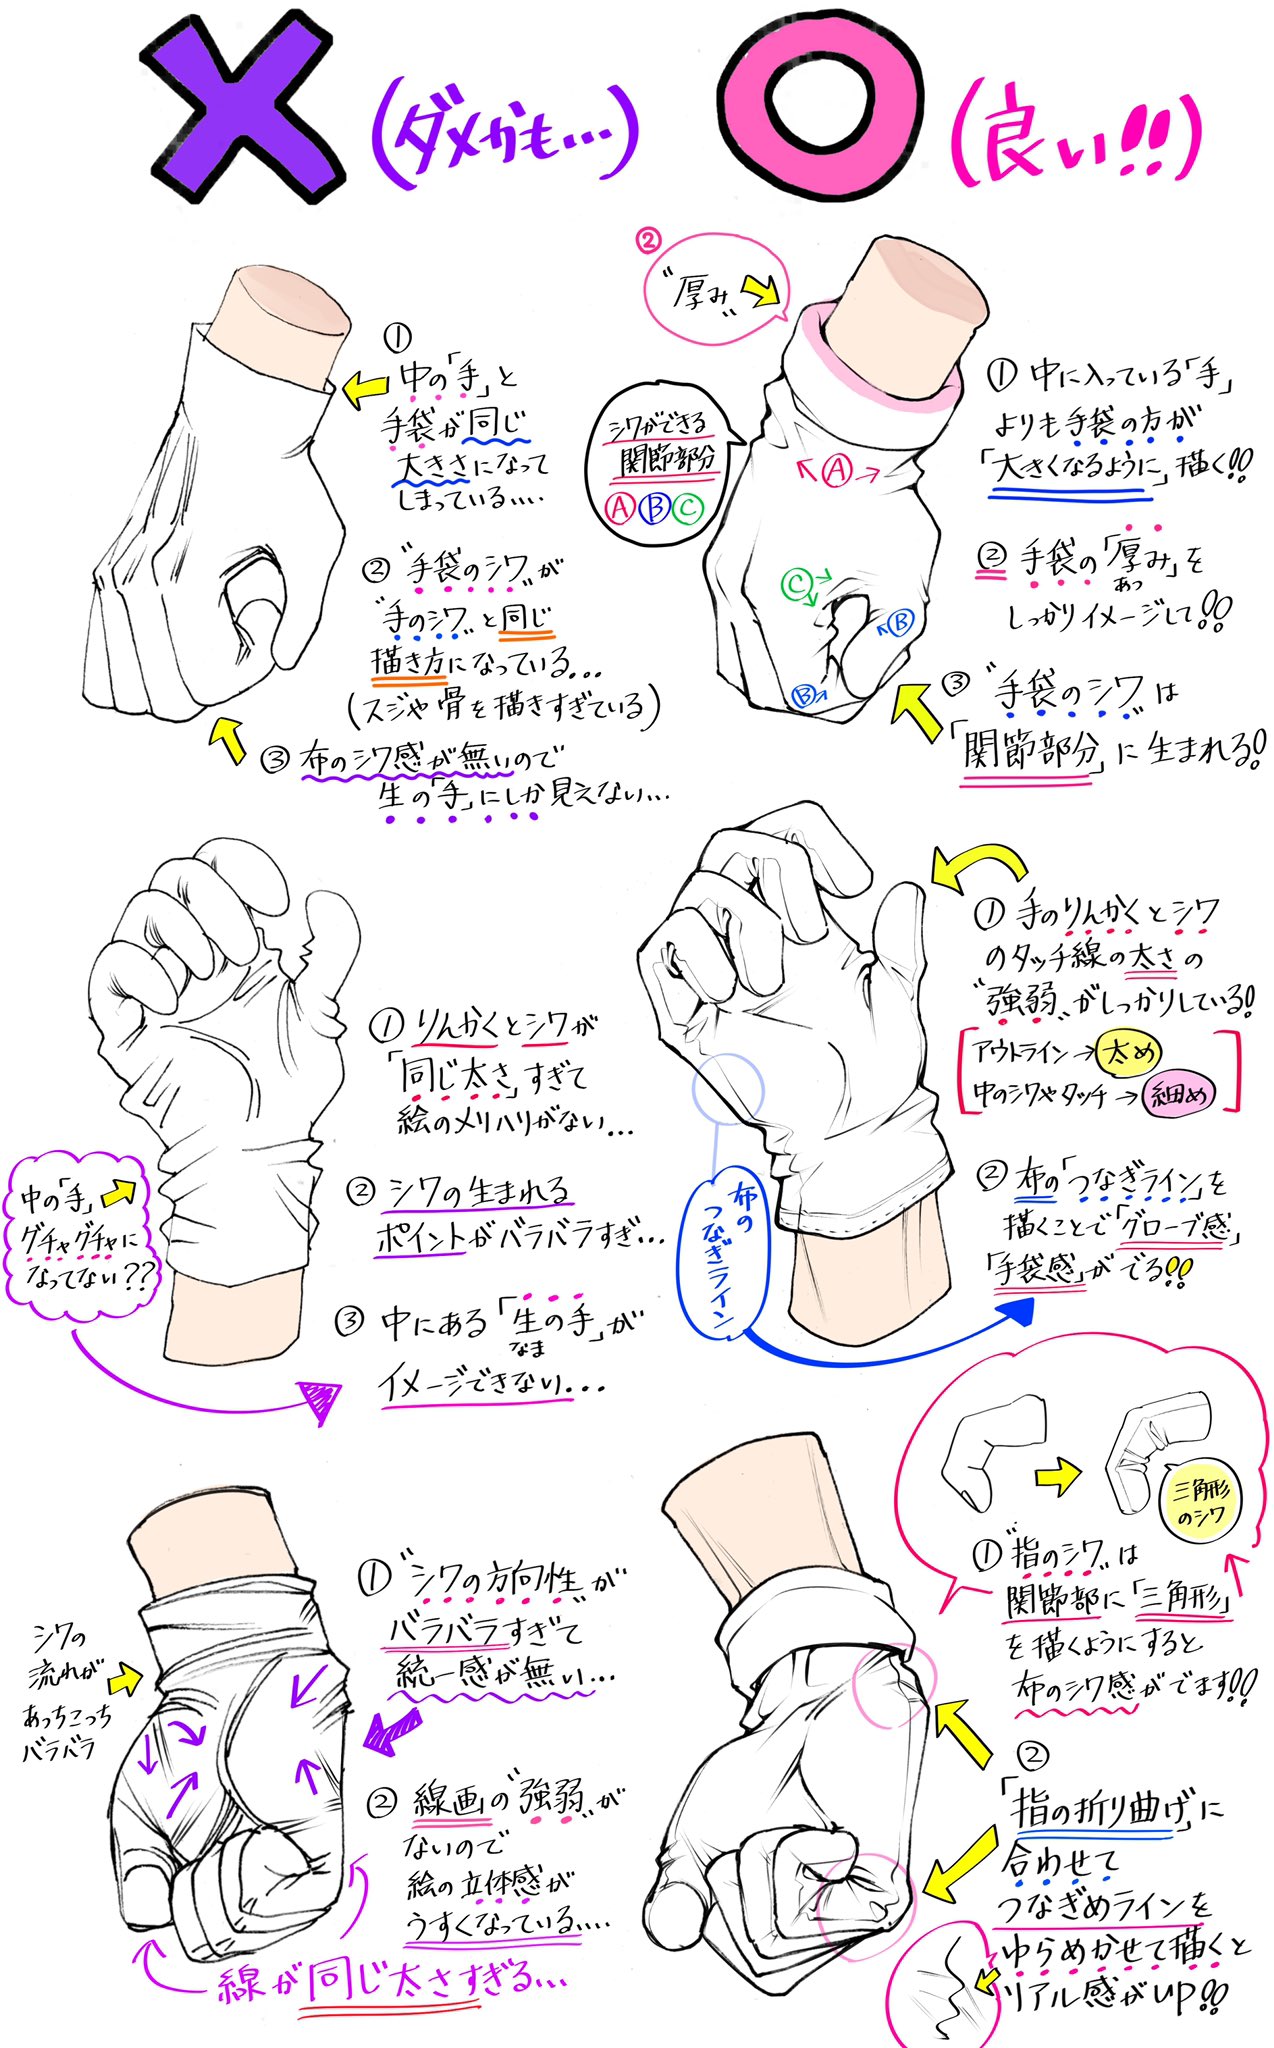 吉村拓也 イラスト講座 手袋グローブの描き方 手袋 の質感やシワ が上達する ダメかも と 良いかも T Co 0auvmzdnip Twitter